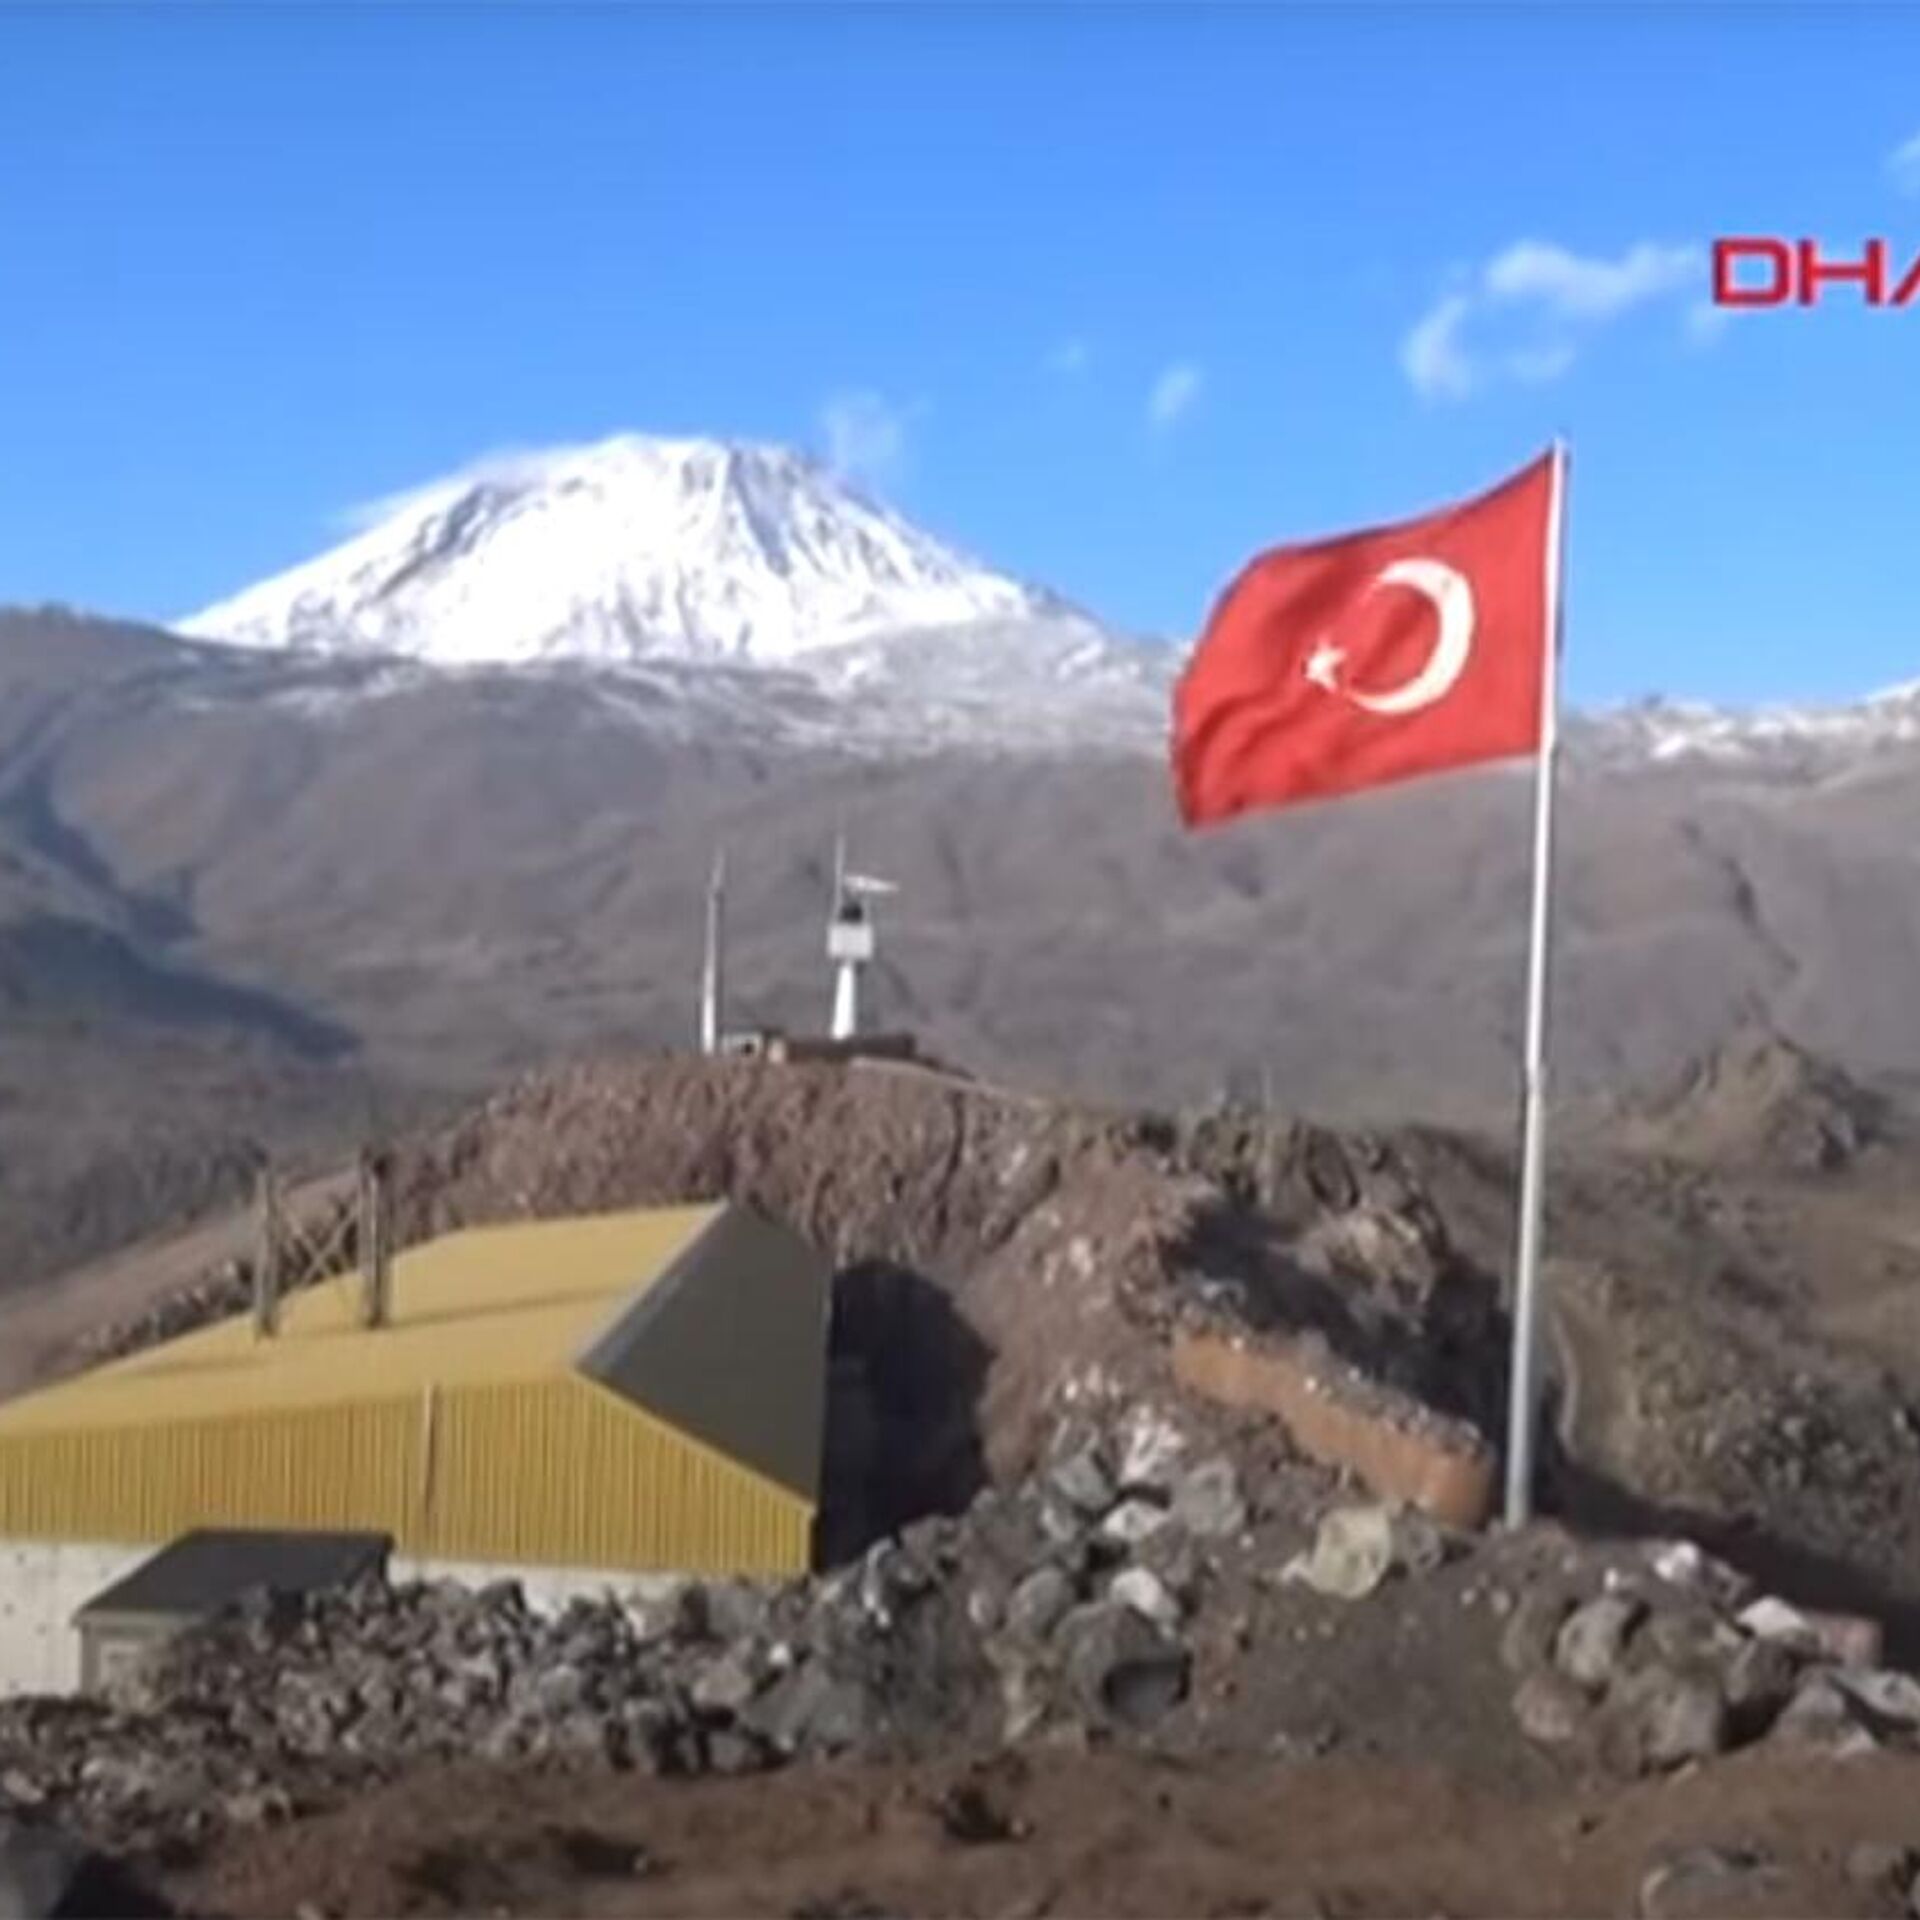 Гора Арарат и монастырь Армении Хор Вирап, фото и видео. Часть 4.